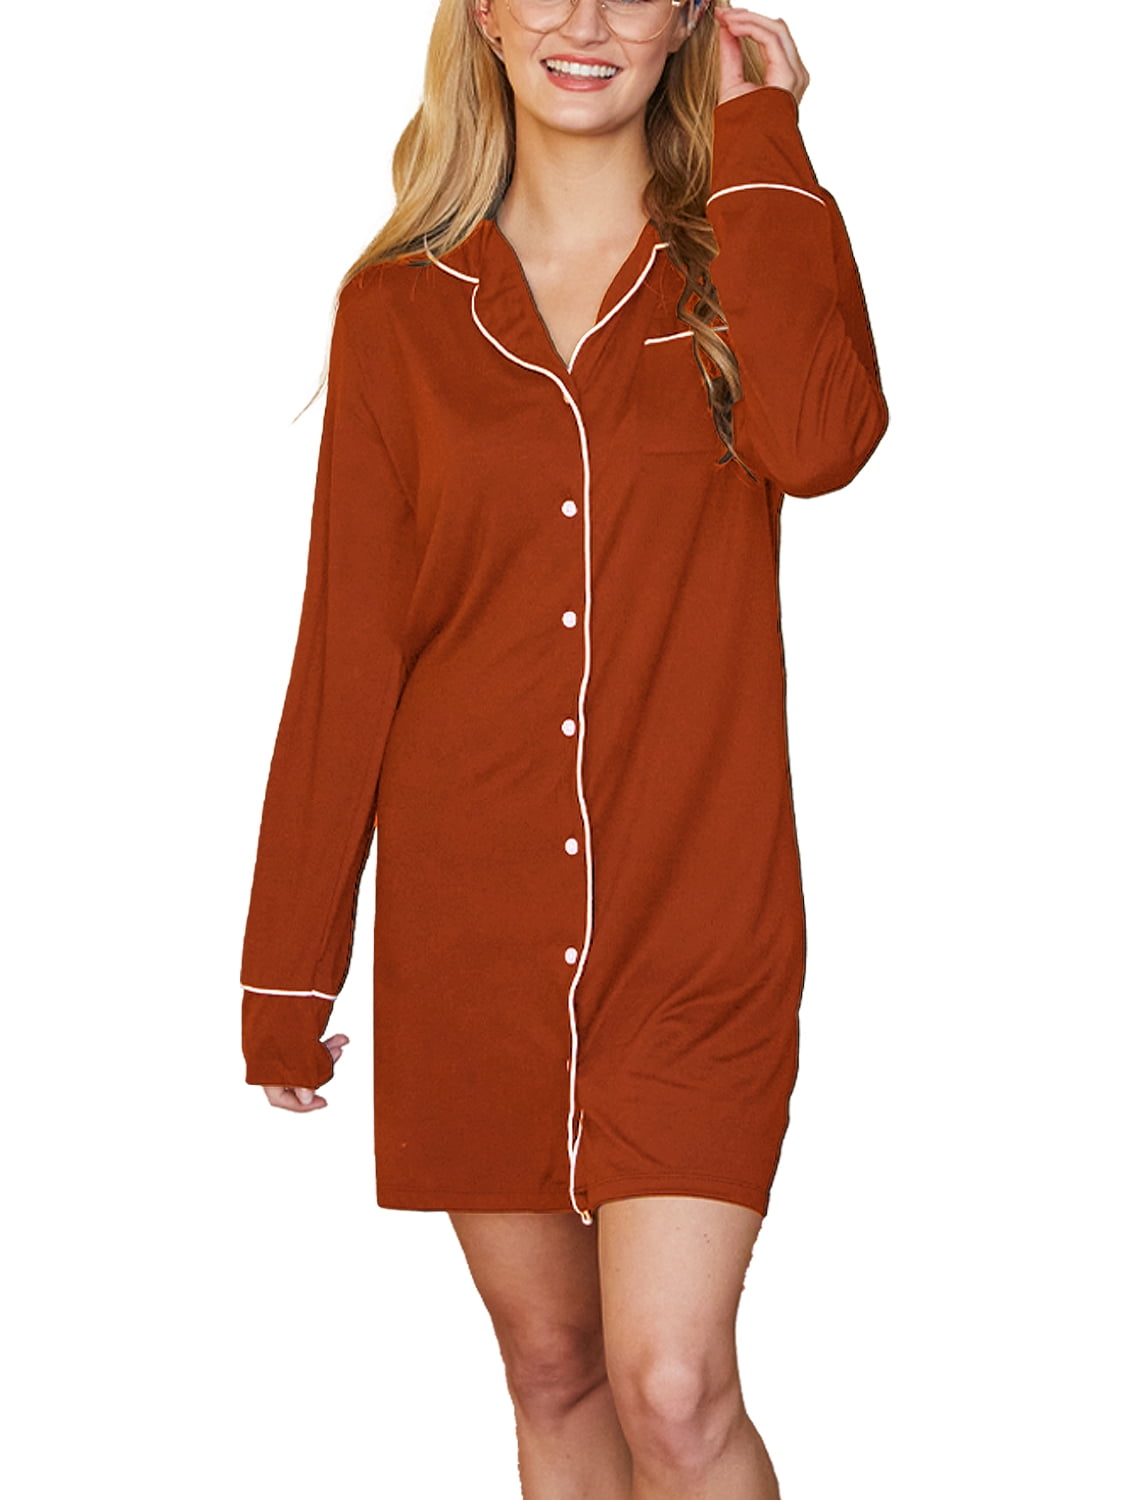 Women Nightshirt Long Sleeve Cotton Sleep Shirt Button Down Nightie Sleepwear M-XXL